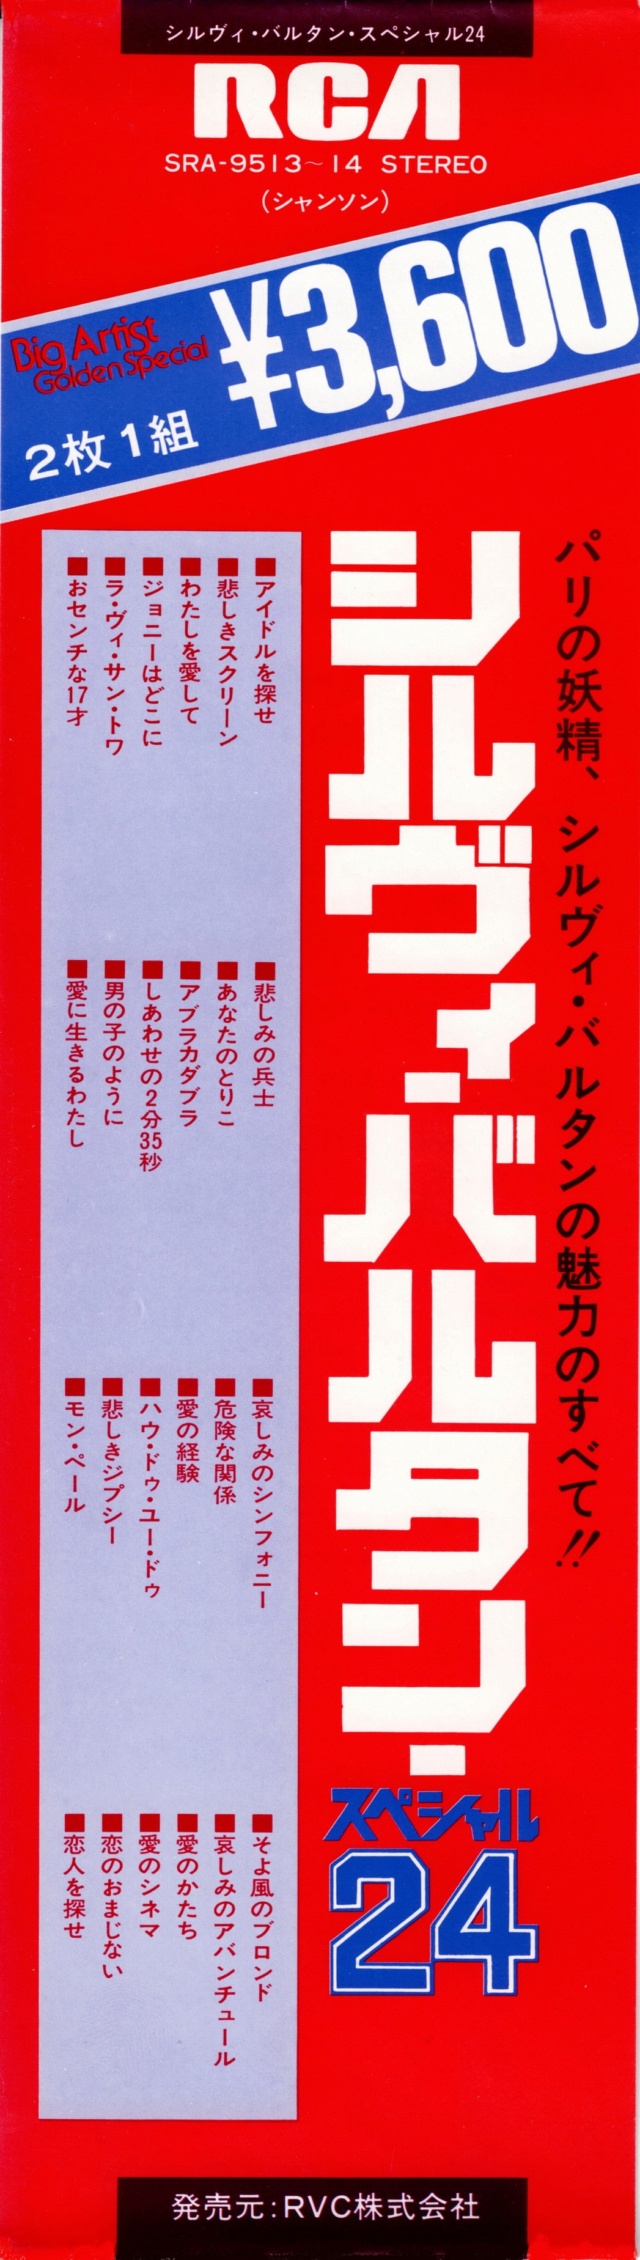 Discographie Japonaise - 4ème partie (33 T COMPILATION) - Page 15 Jpn_sr52